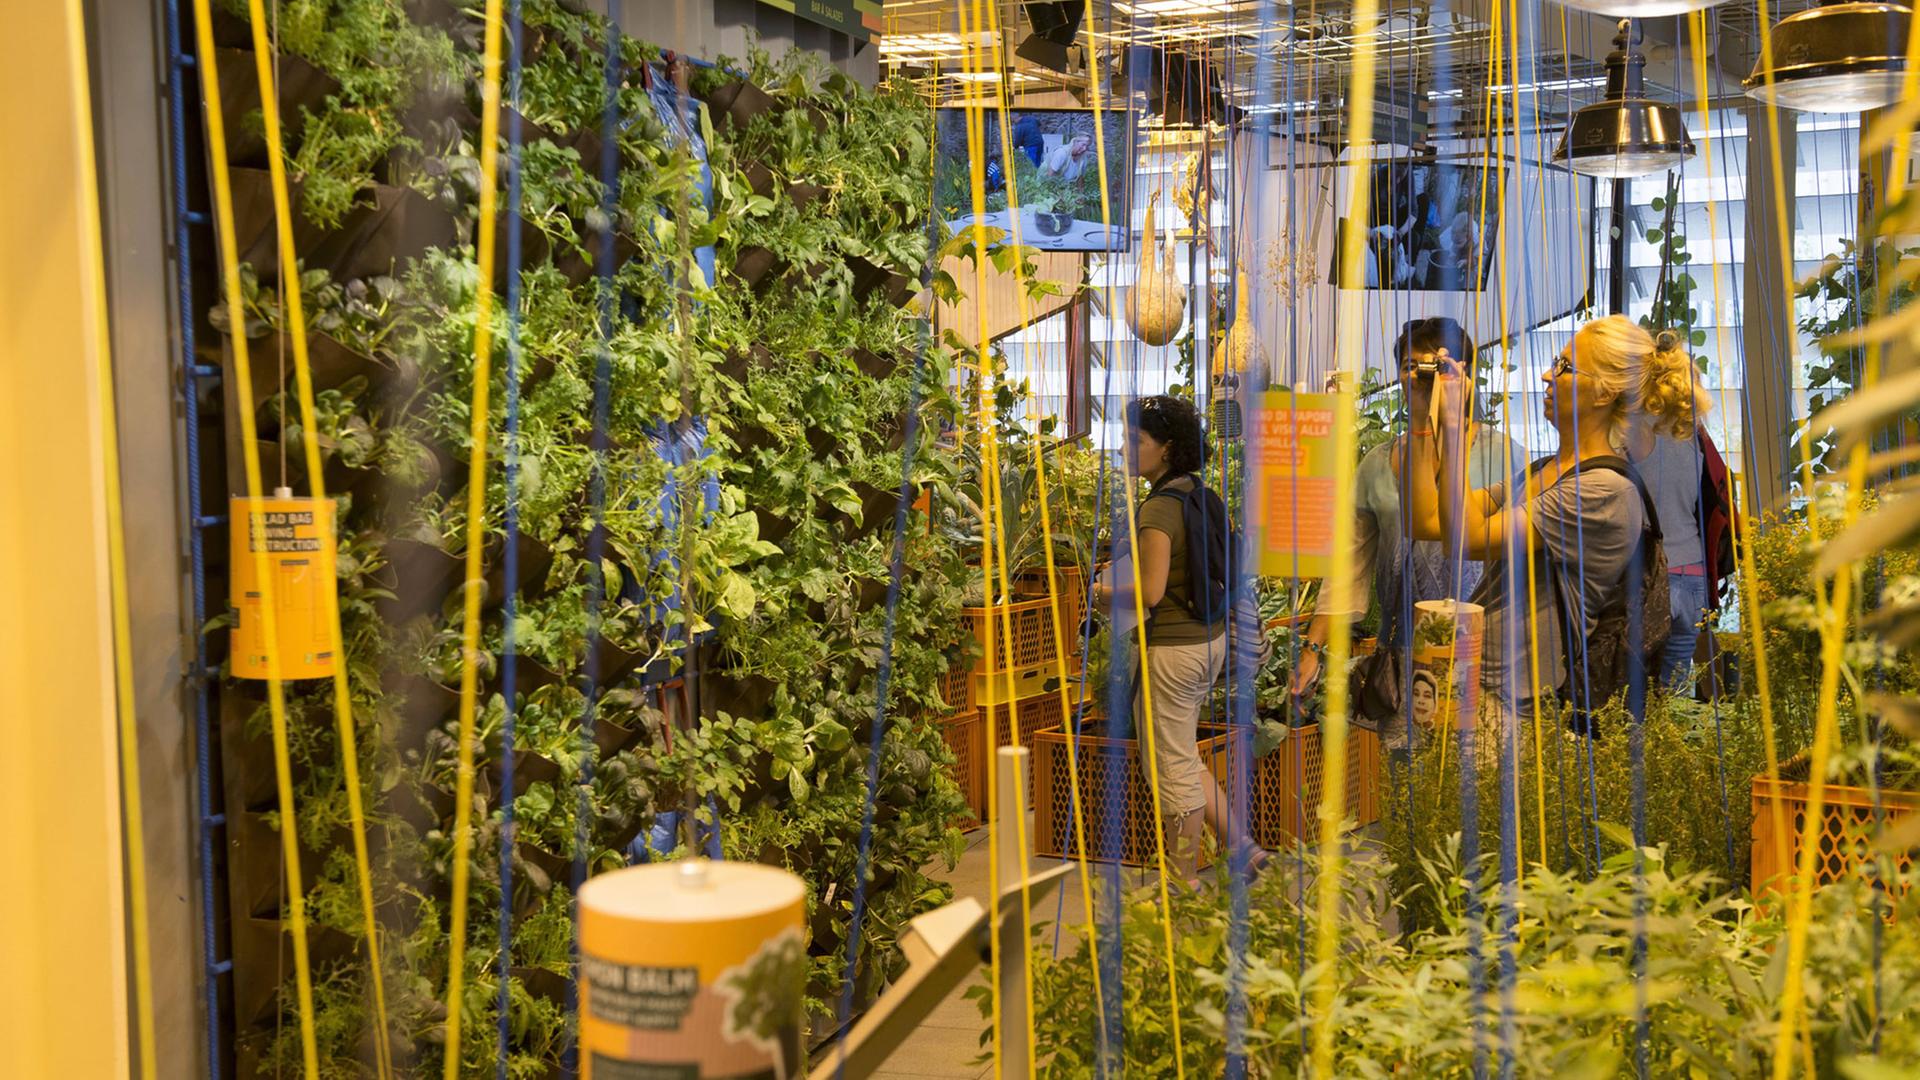 Im deutschen Pavillon auf der Expo 2015 "Feeding the Planet - Energy for Life" (Den Planeten ernähren - Energie fürs Leben) ist das Field of Ideas (Feld der Ideen) angelegt mit Lösungsansätzen in der Agrarwirtschaft.